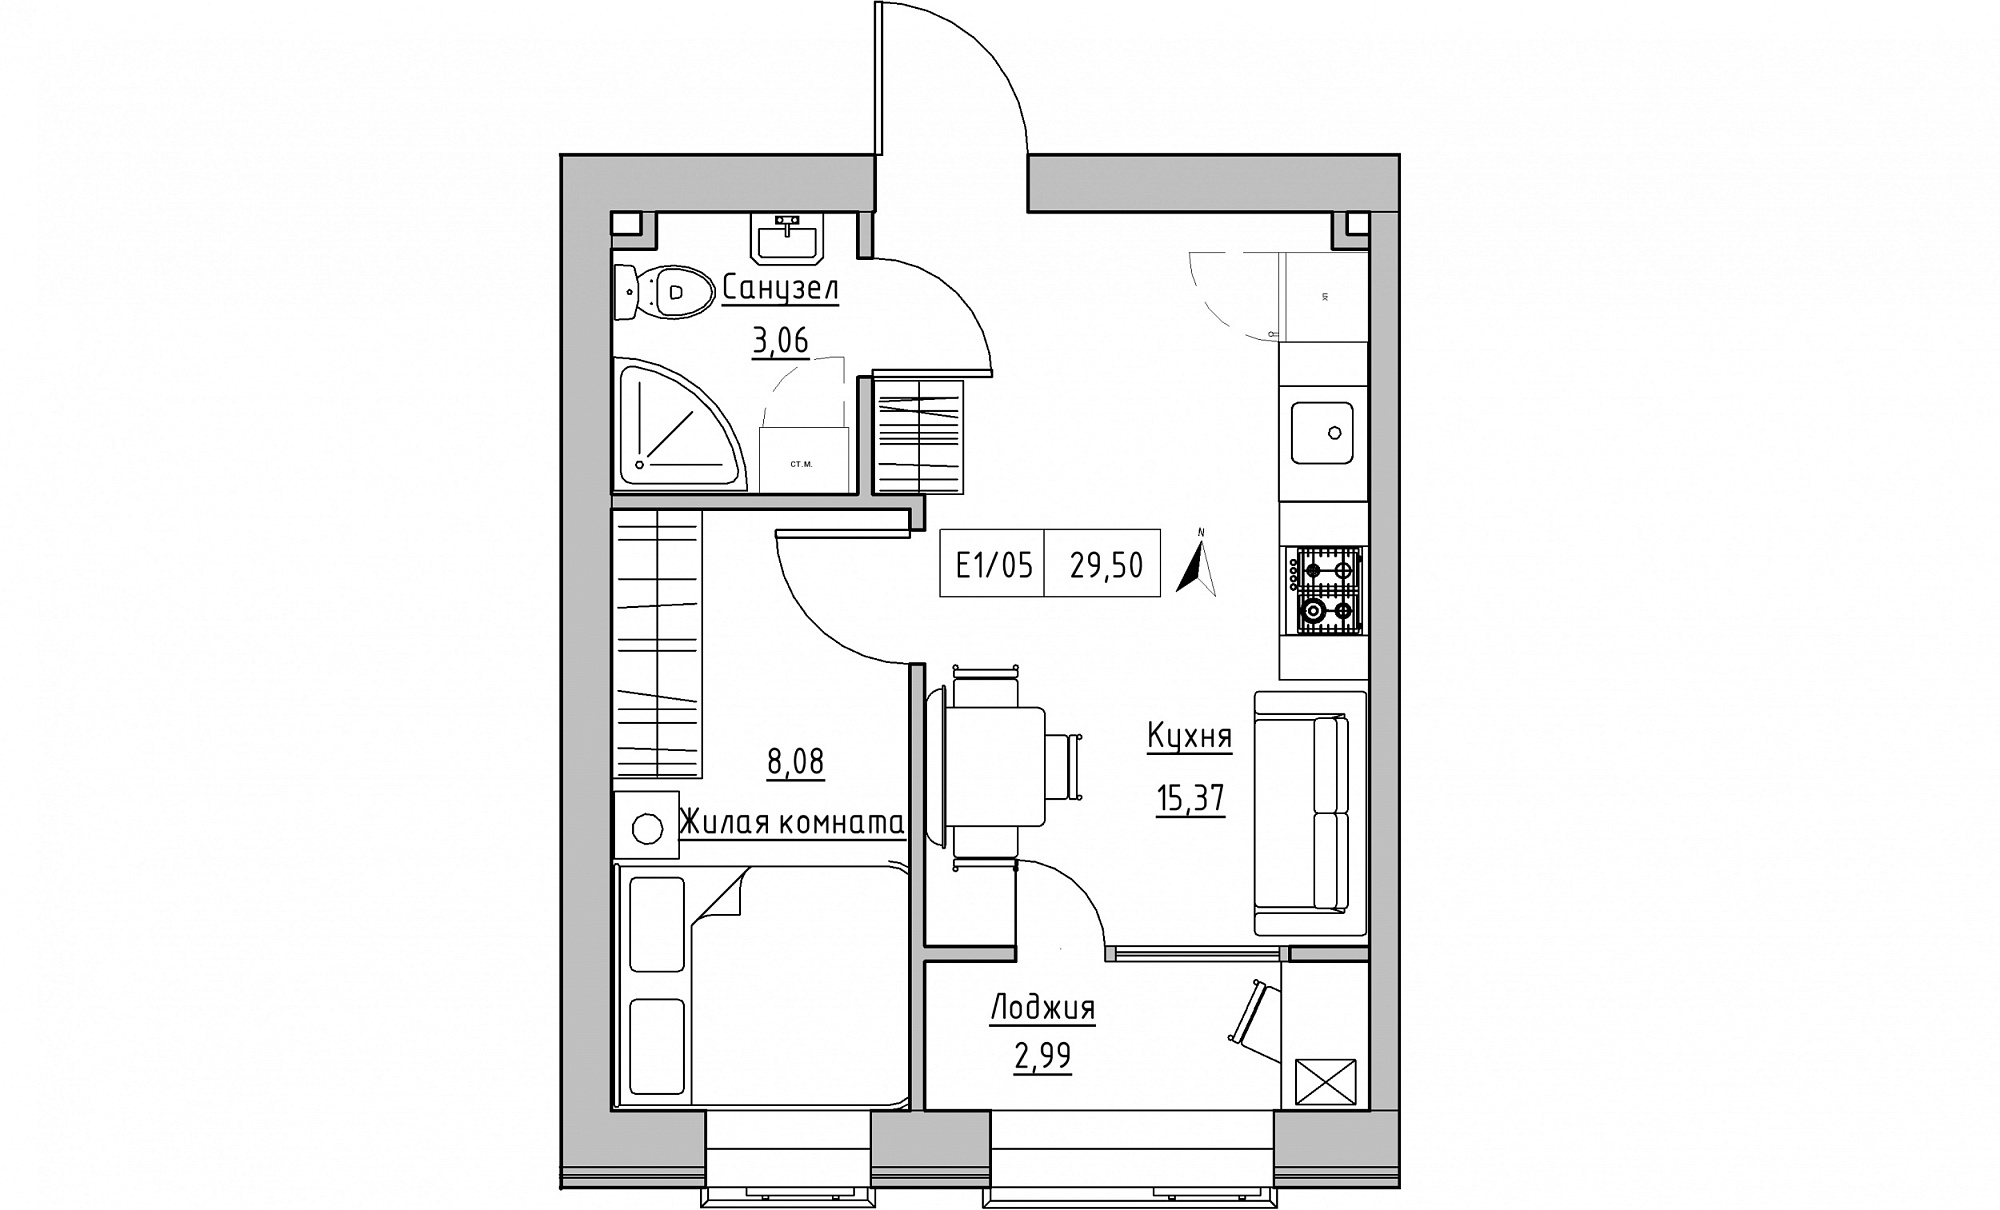 Планировка 1-к квартира площей 29.5м2, KS-015-01/0010.